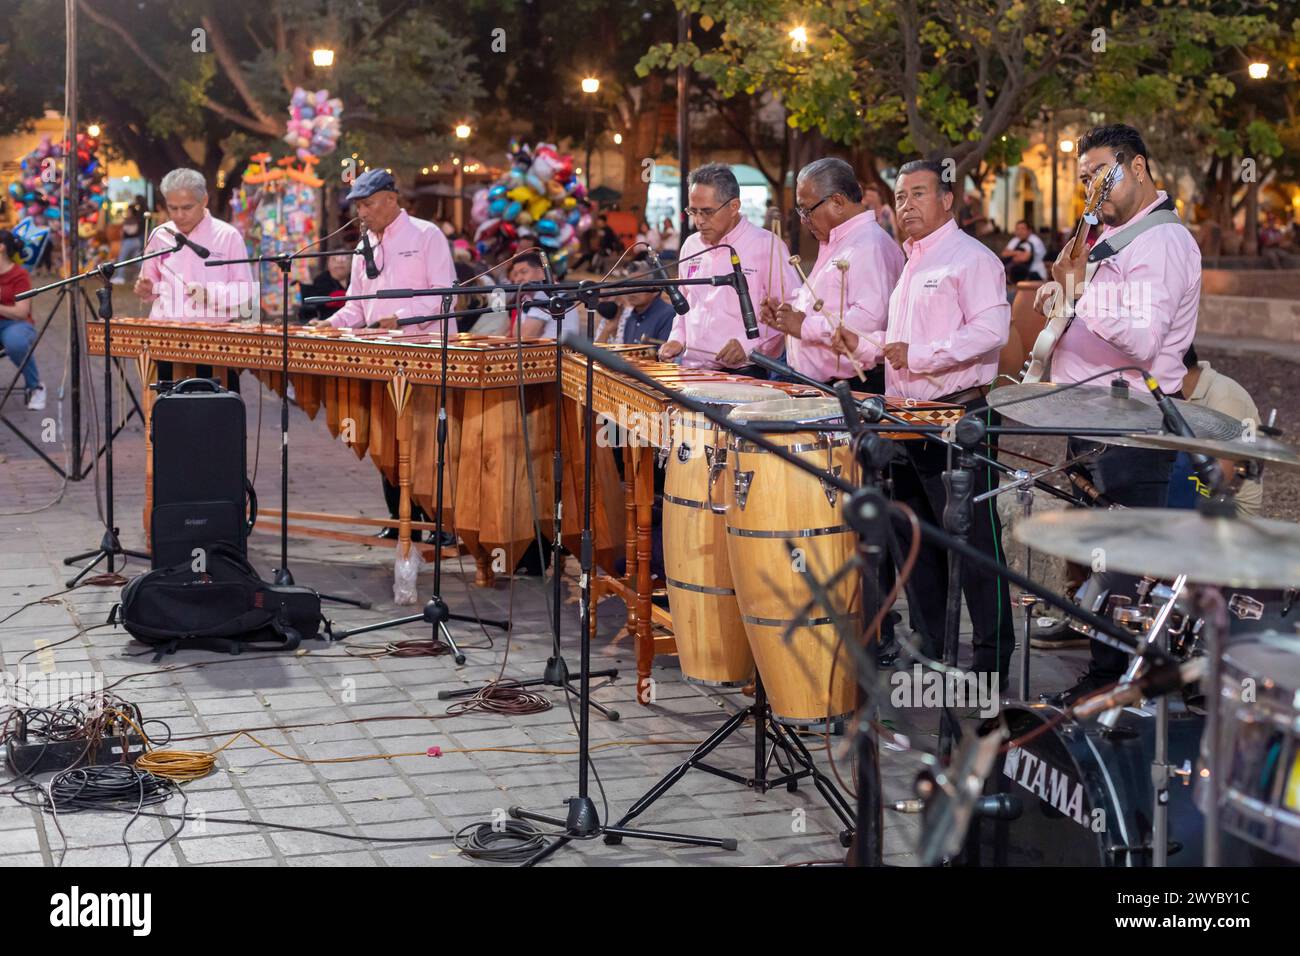 Oaxaca, Mexico - The Marimba del Estado band entertains a crowd in the zocalo. Marimba band music is traditional in southern Mexico. Stock Photo